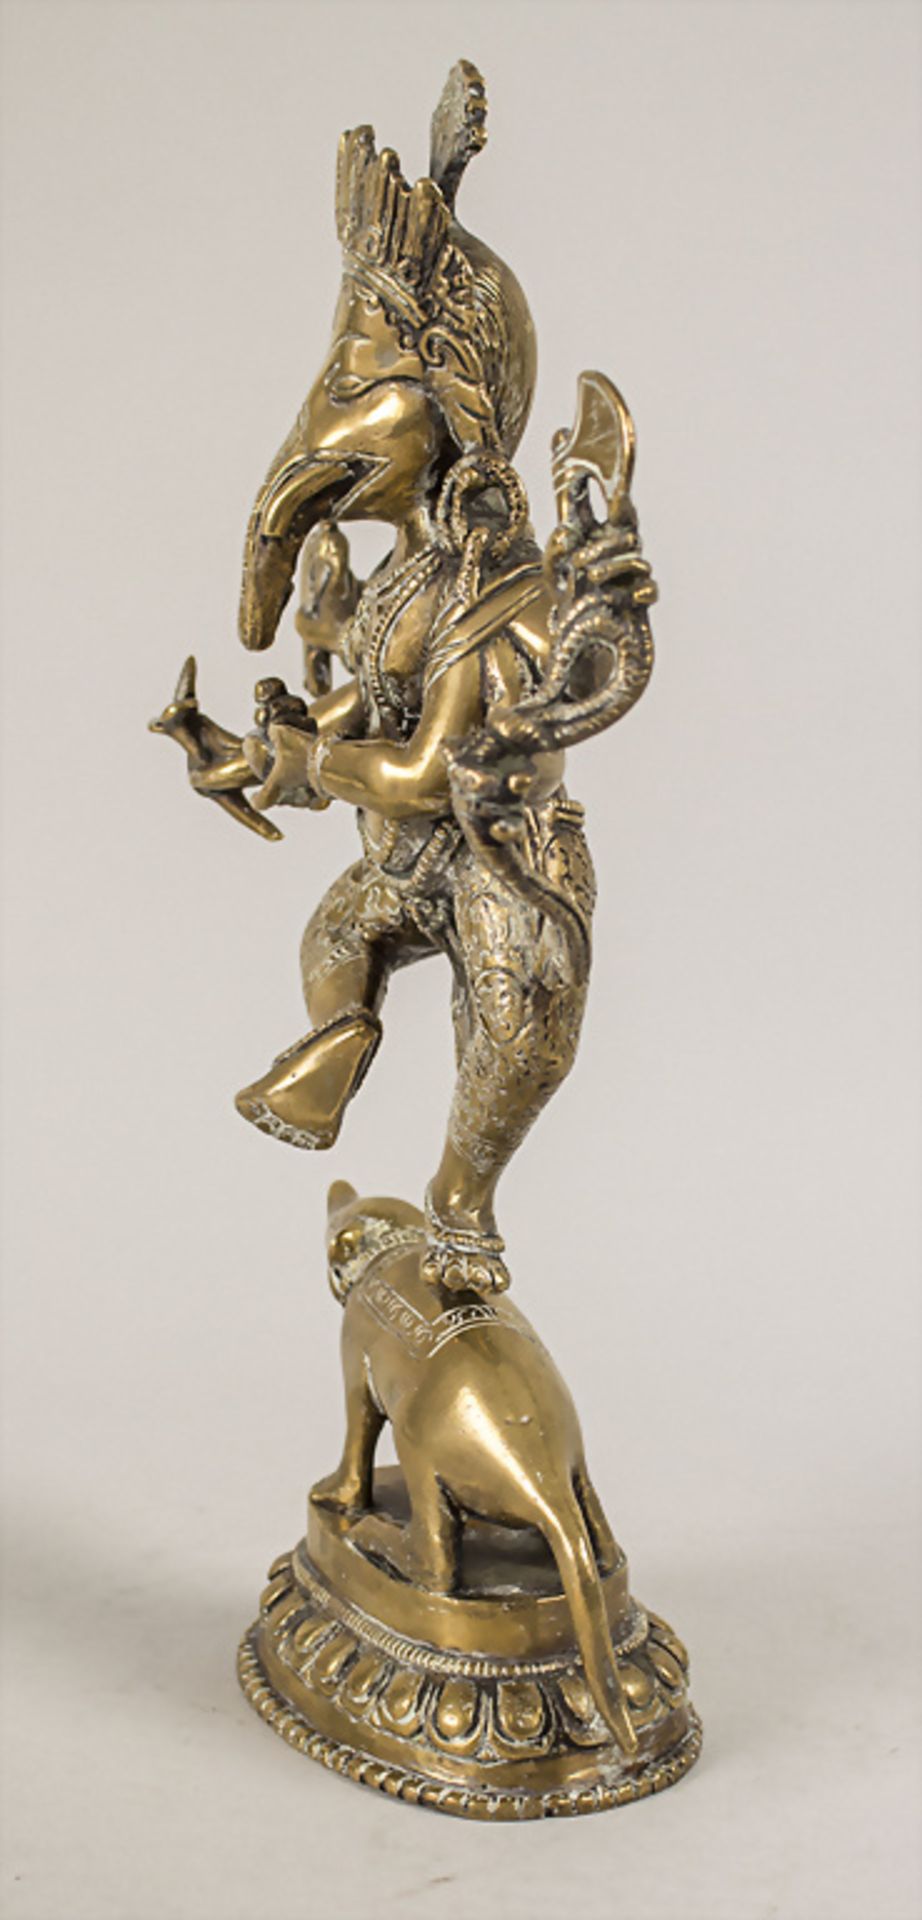 Ganesha auf Ratte, Indien, 18./19. Jh. - Bild 4 aus 6